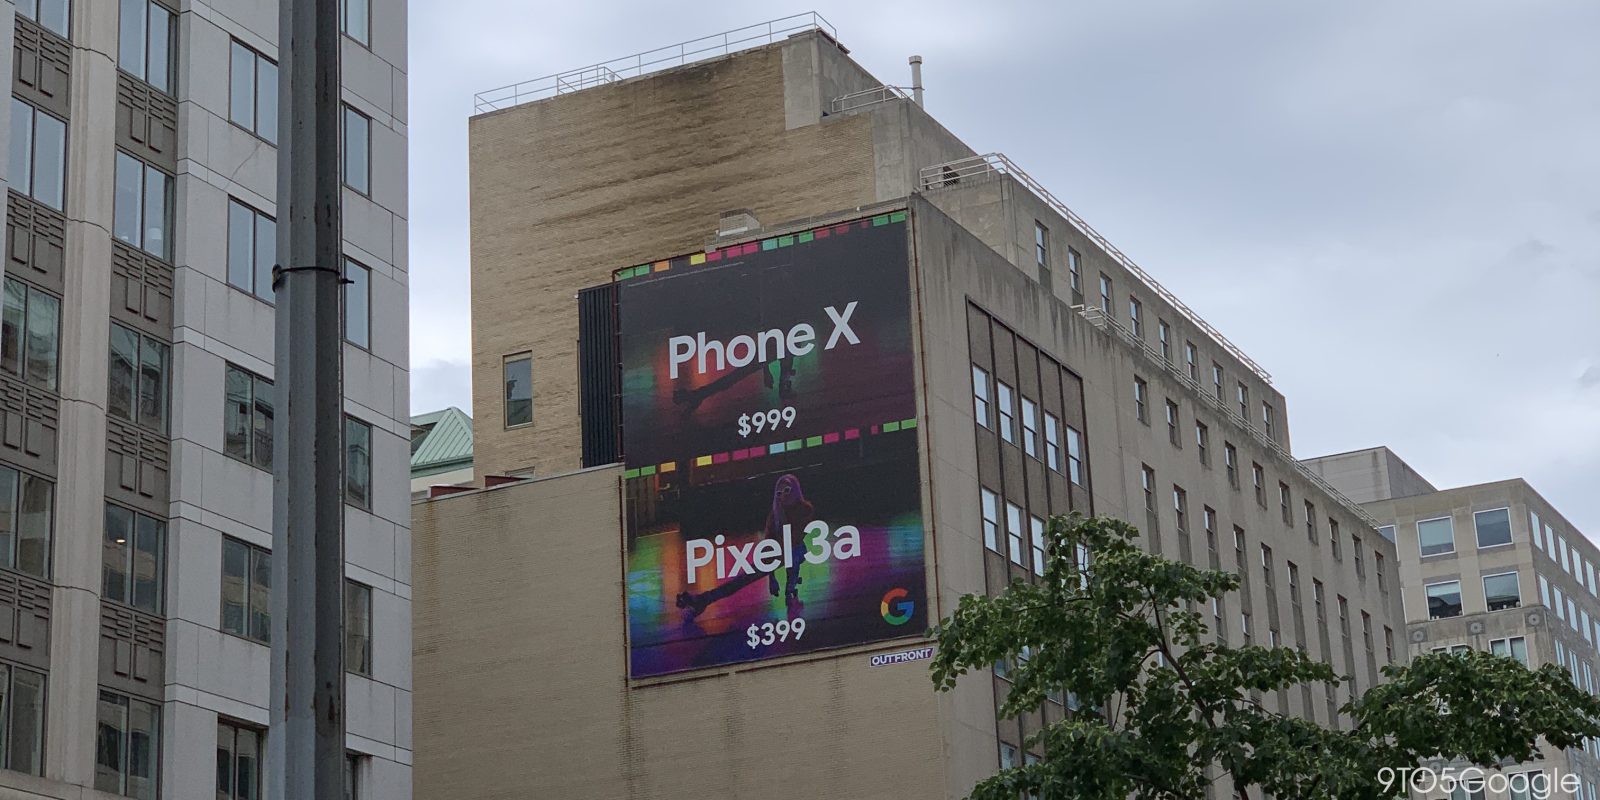 Pixel 3a vs iPhone ad